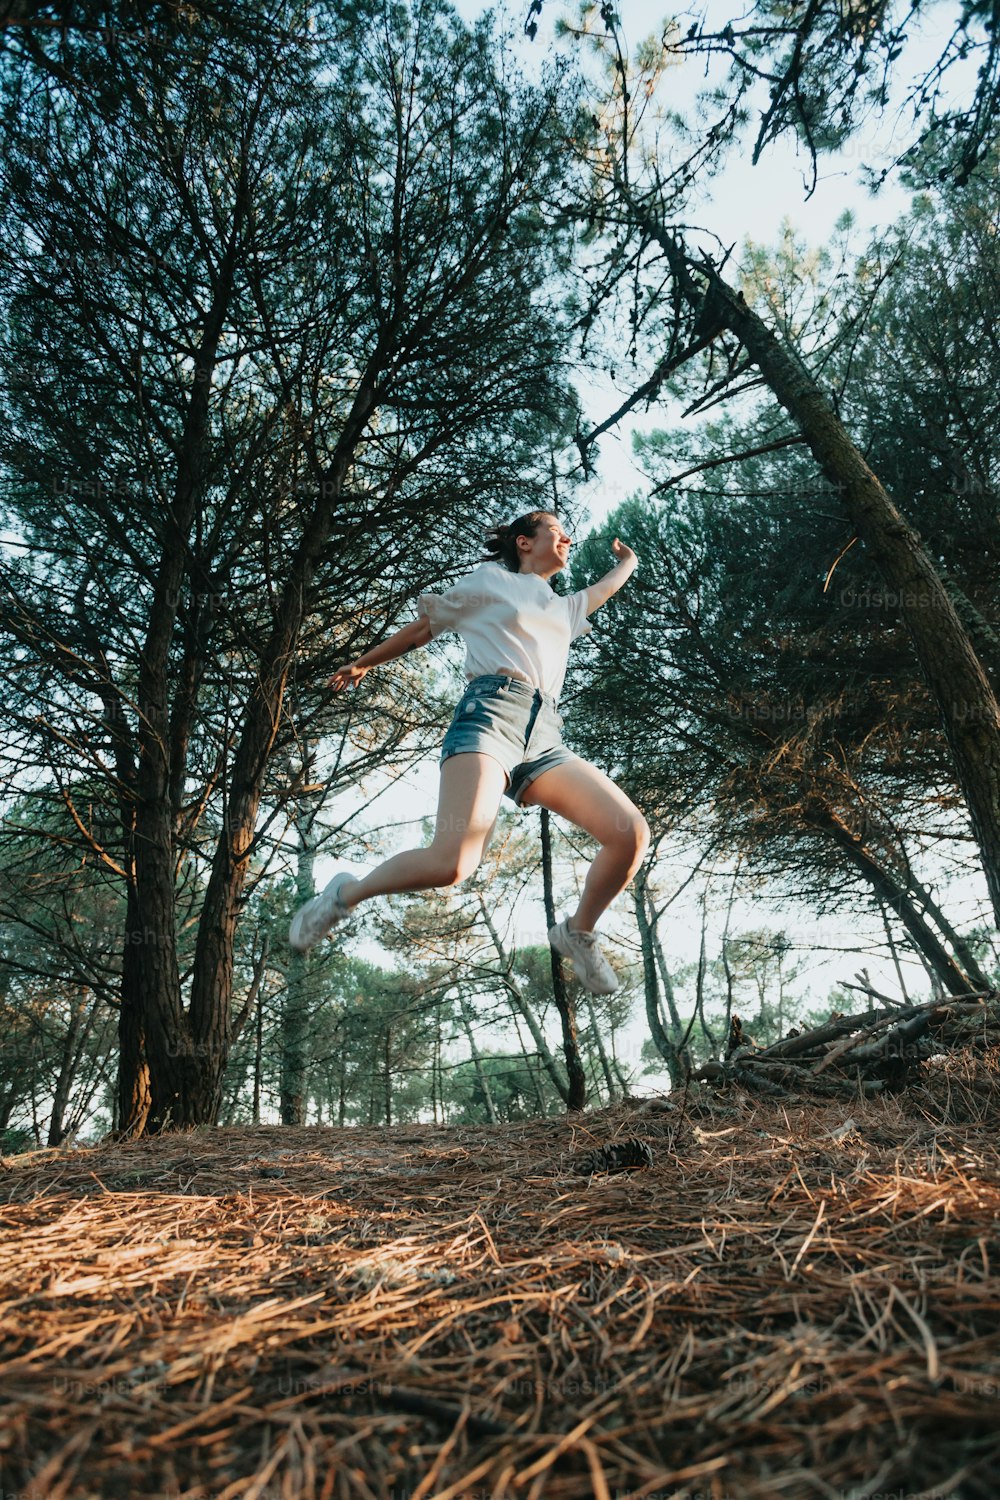 Un hombre saltando en el aire en el bosque